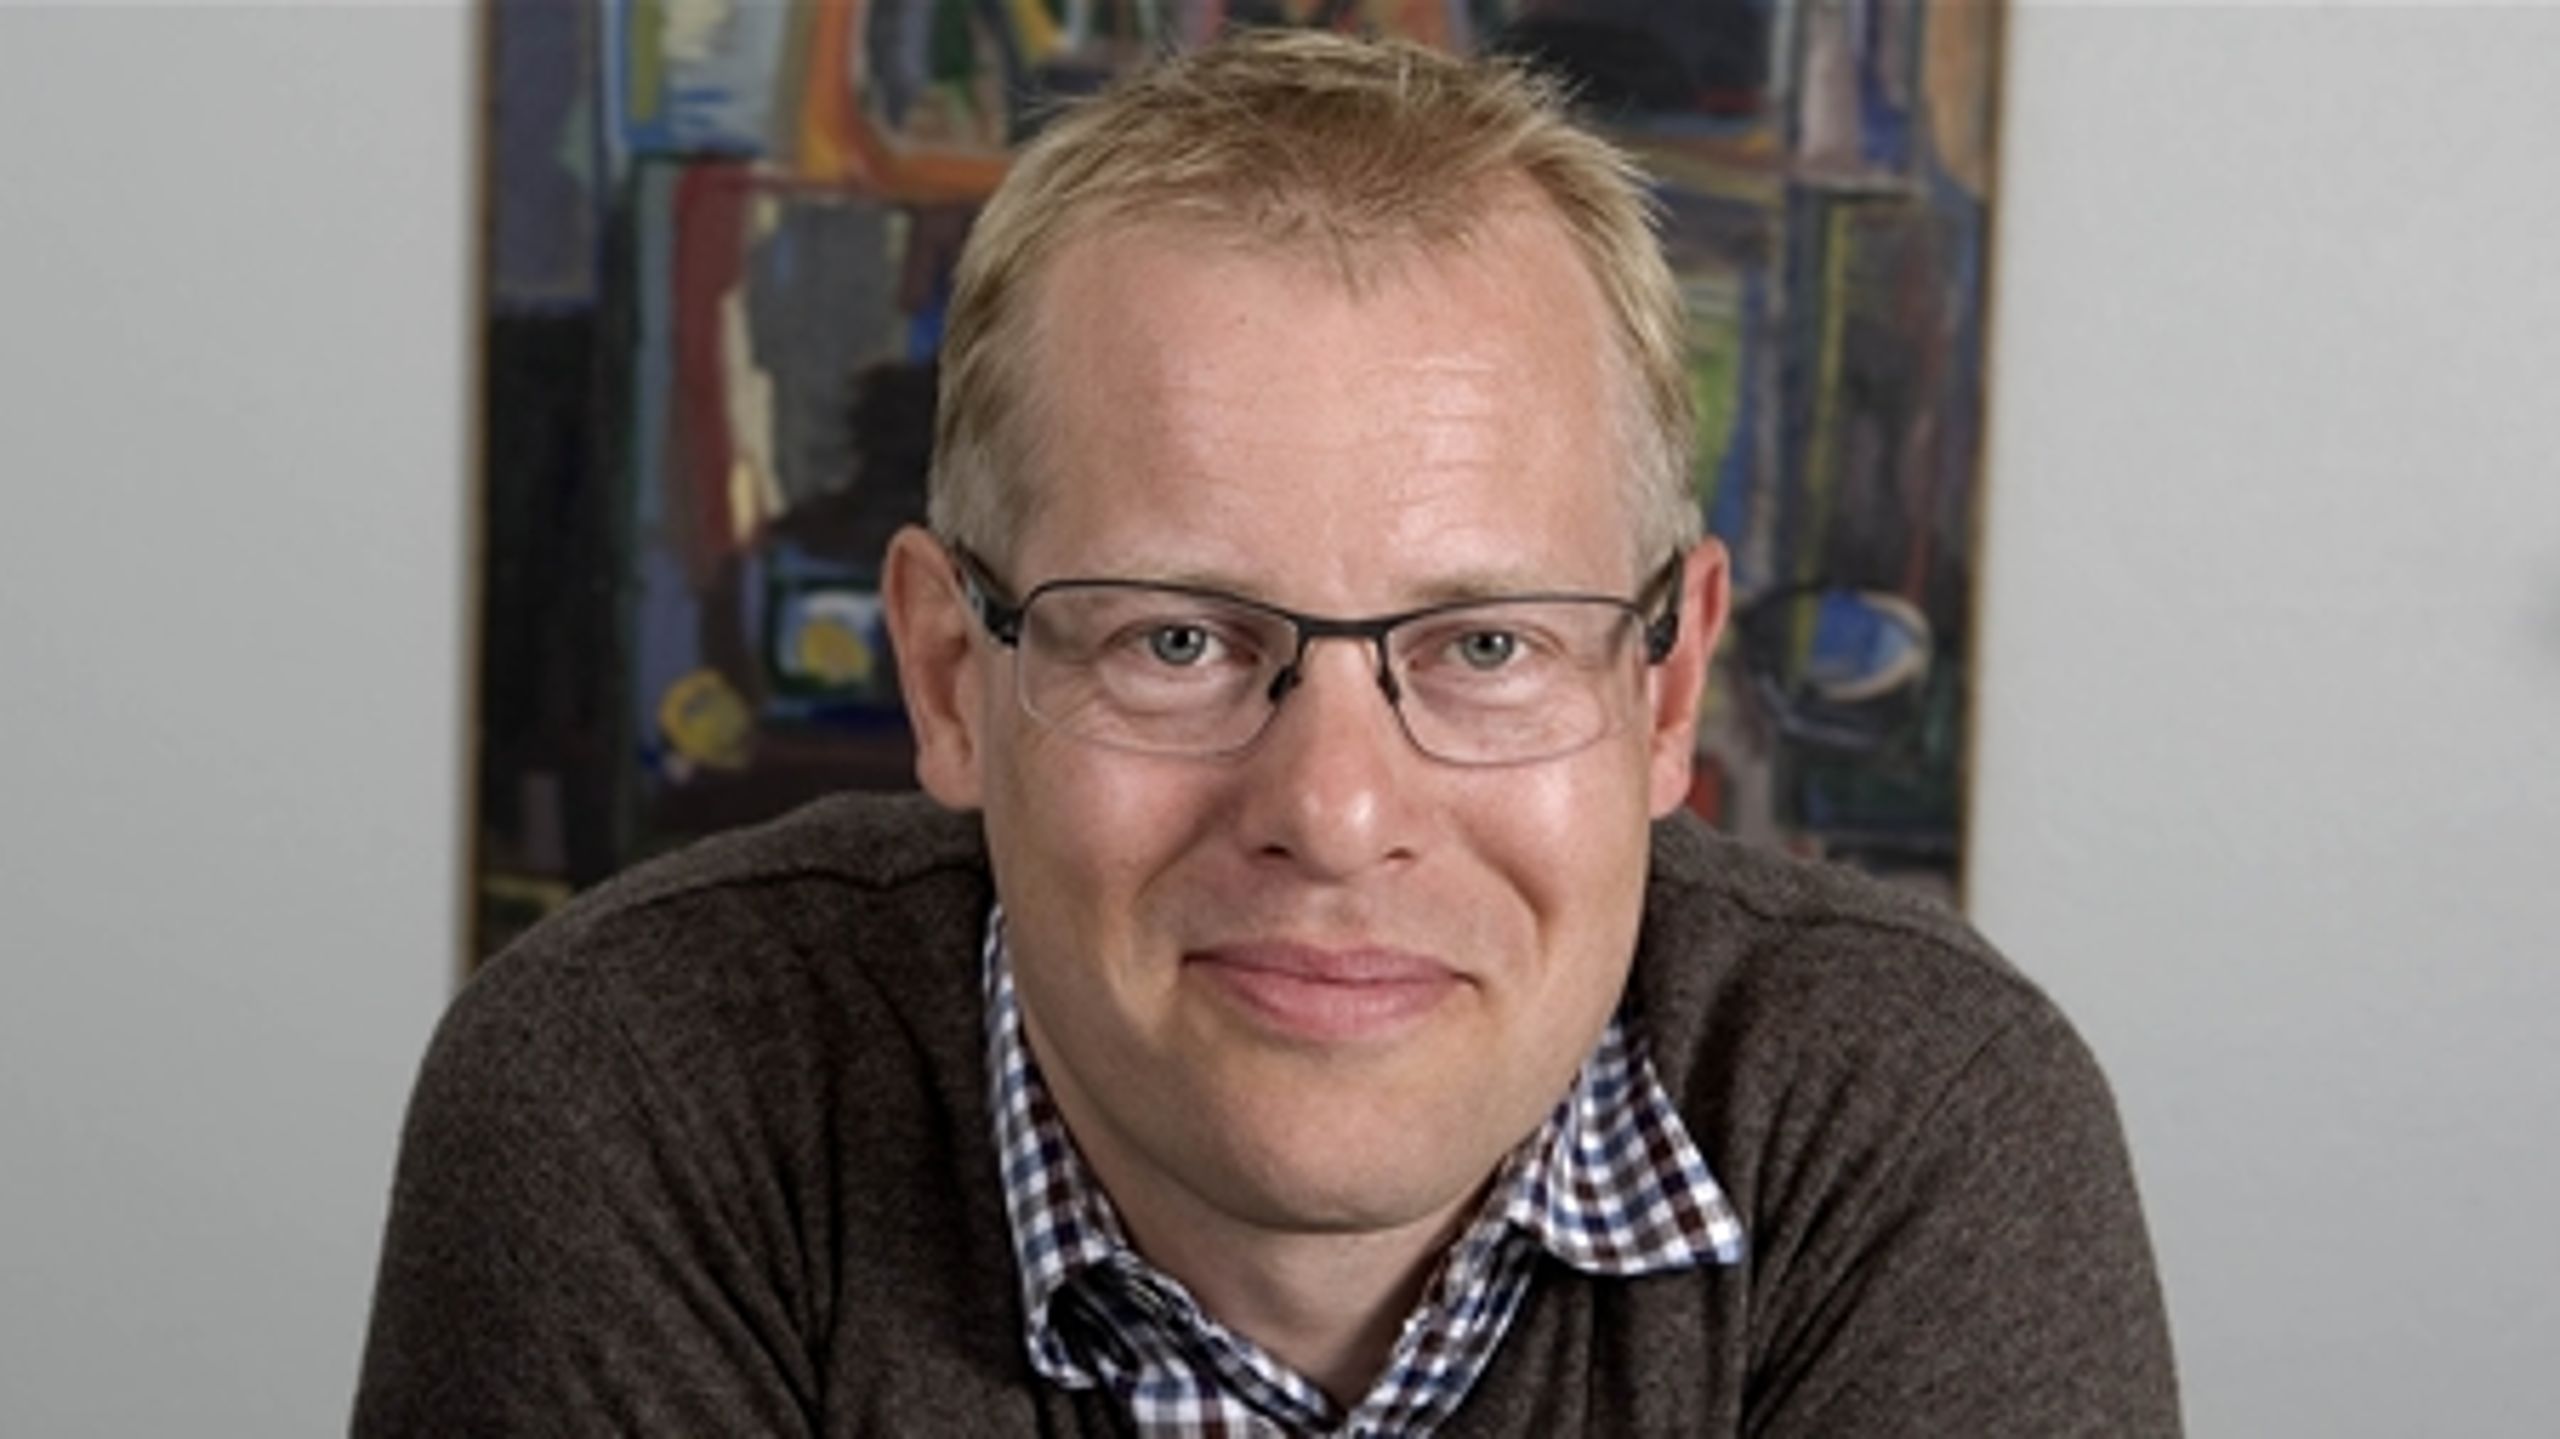 Regionsrådsformand Carl Holsts næste kariereskridt i Venstre kan blive som partisekretær eller som folketingsmedlem, skriver Jarl Cordua.